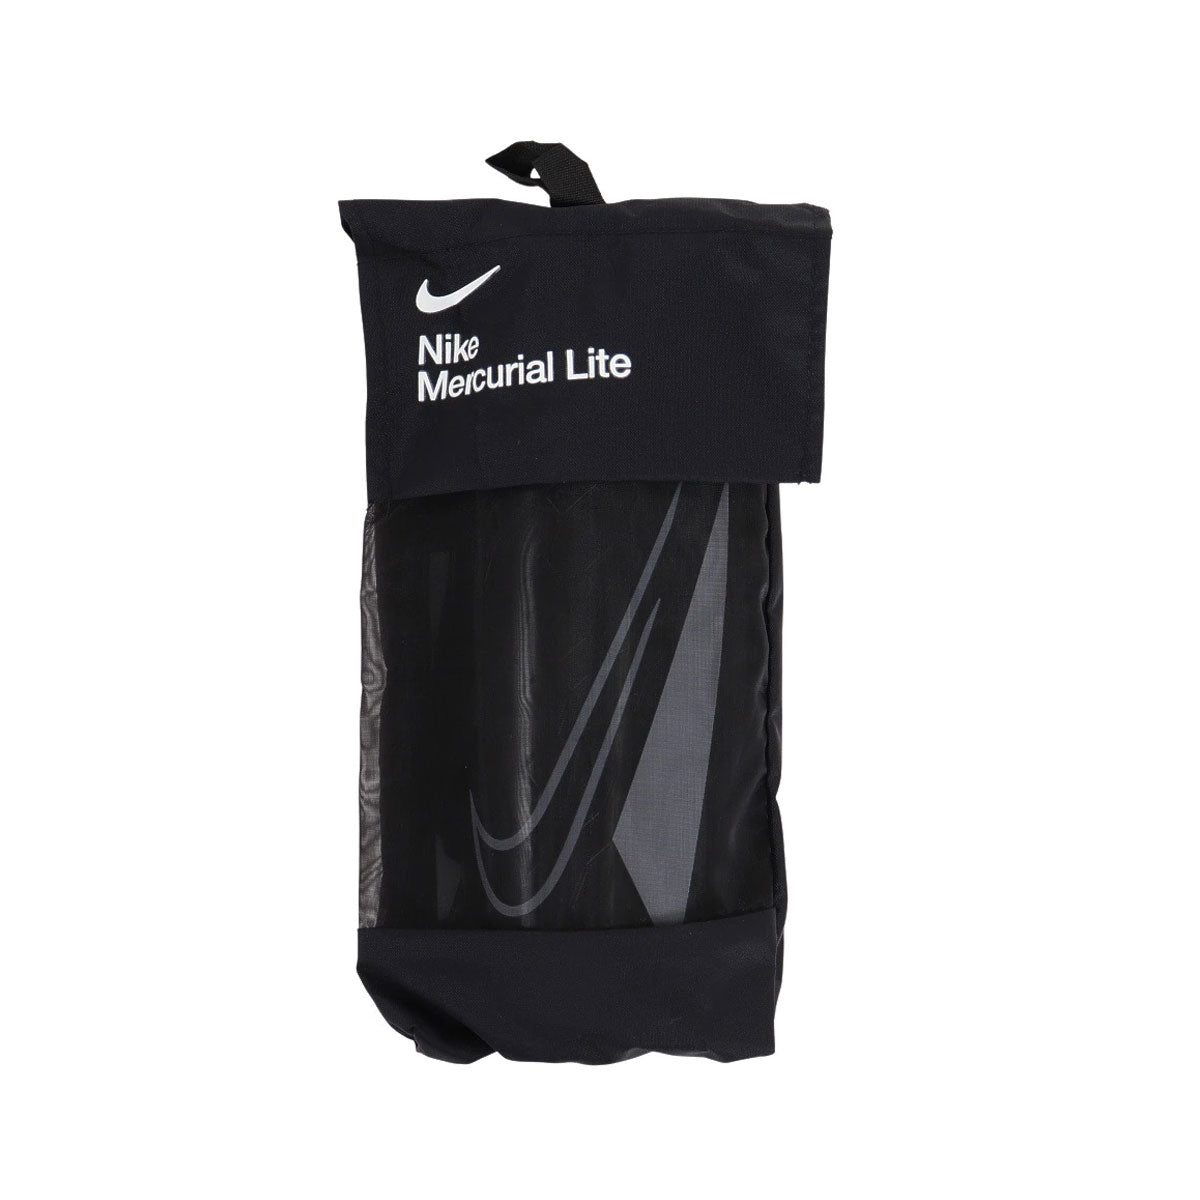 Nike Men's Mercurial Lite Shin Guards